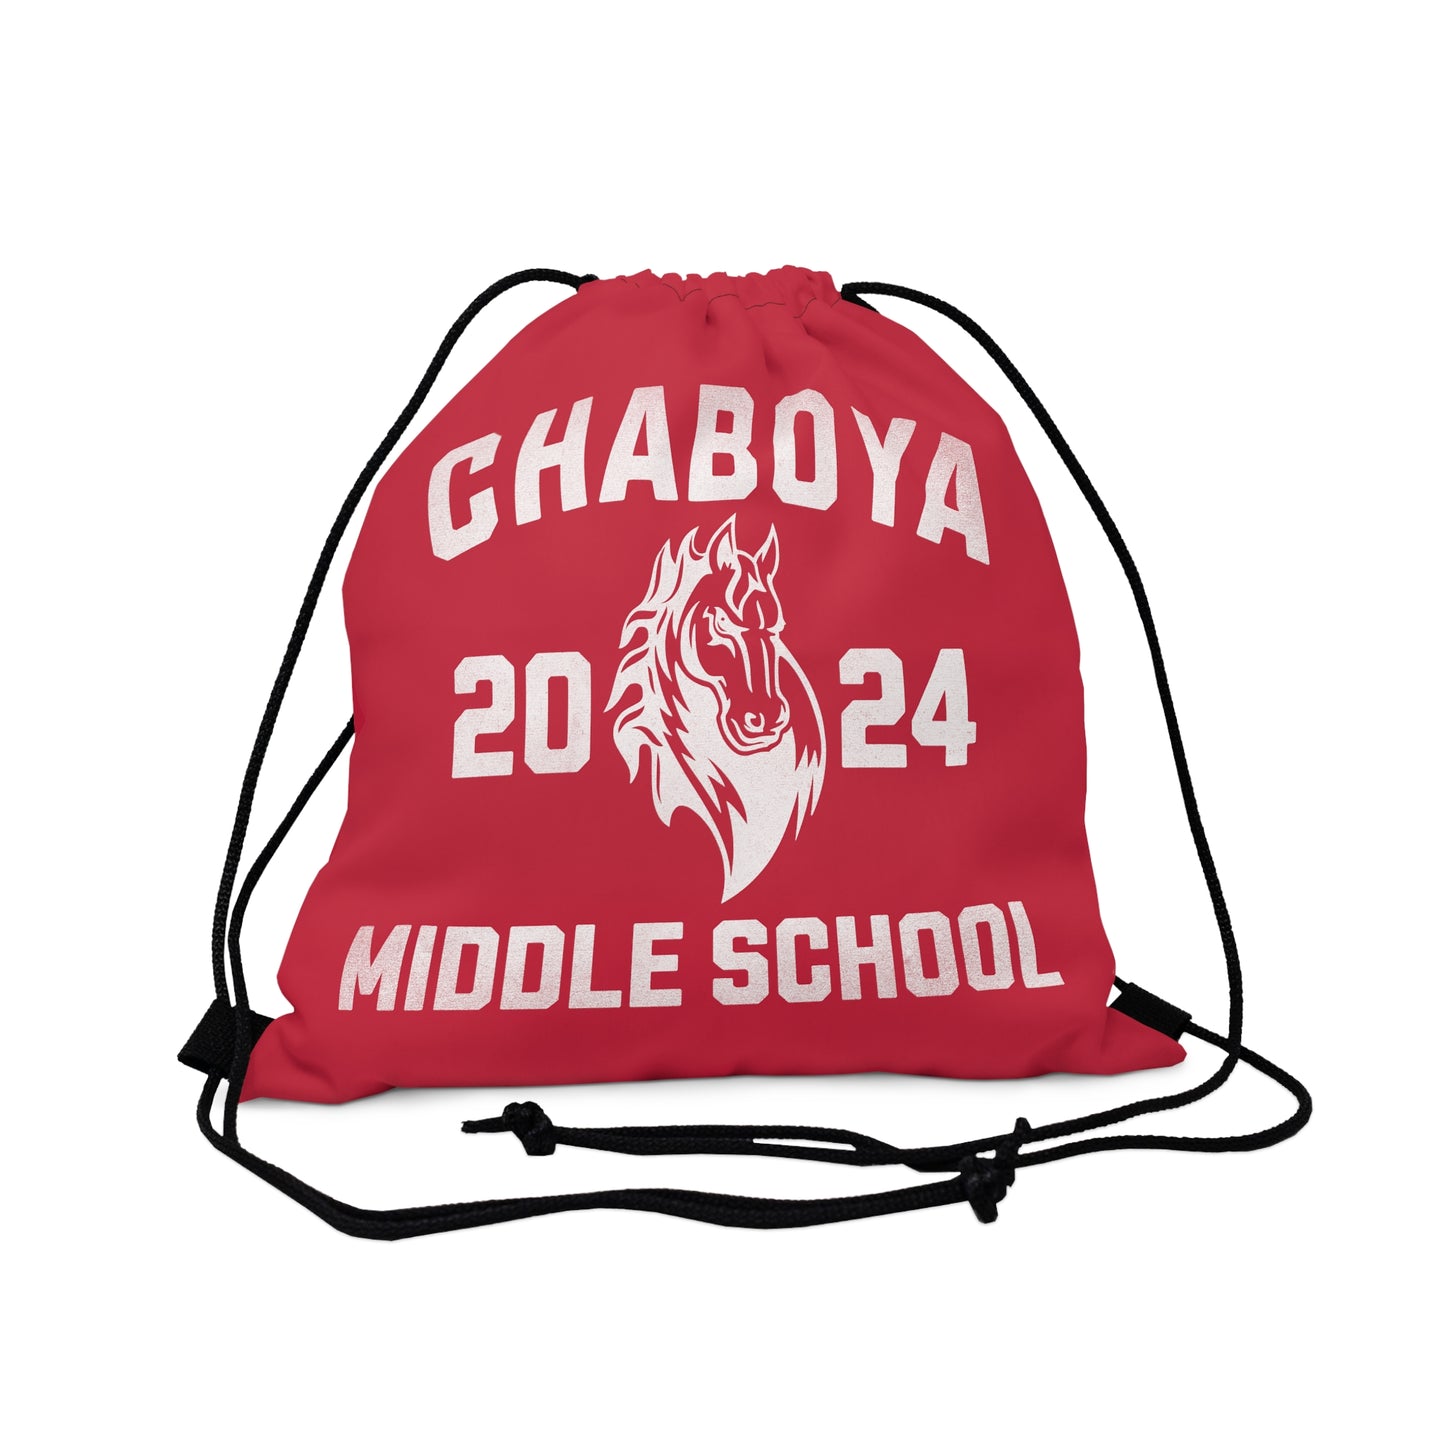 Chaboya Middle School 2024 - Drawstring Bag